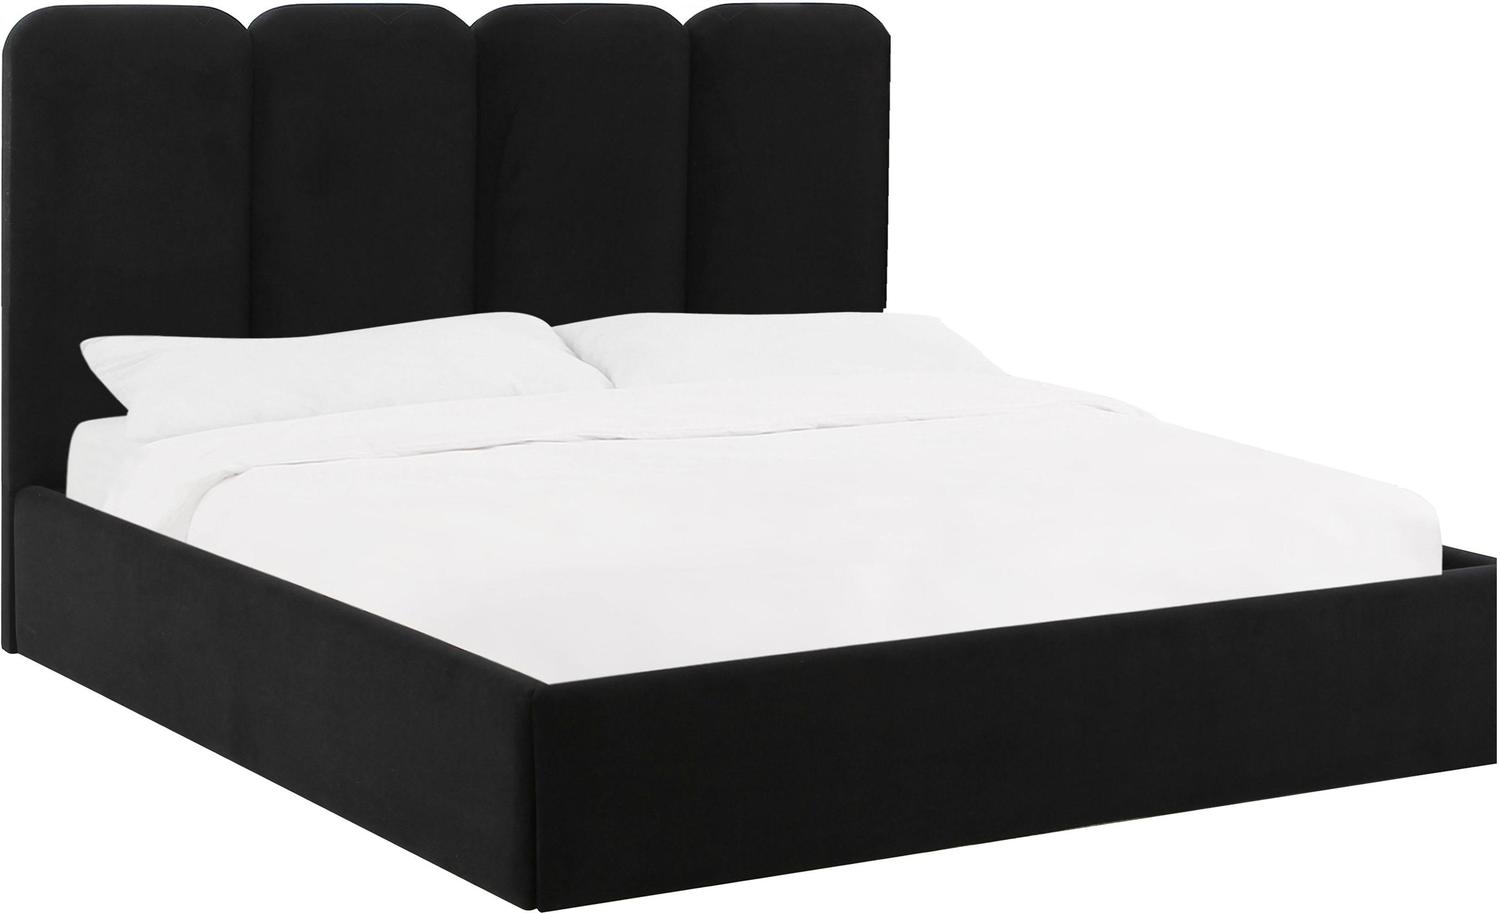 gray king bed frame Tov Furniture Beds Black